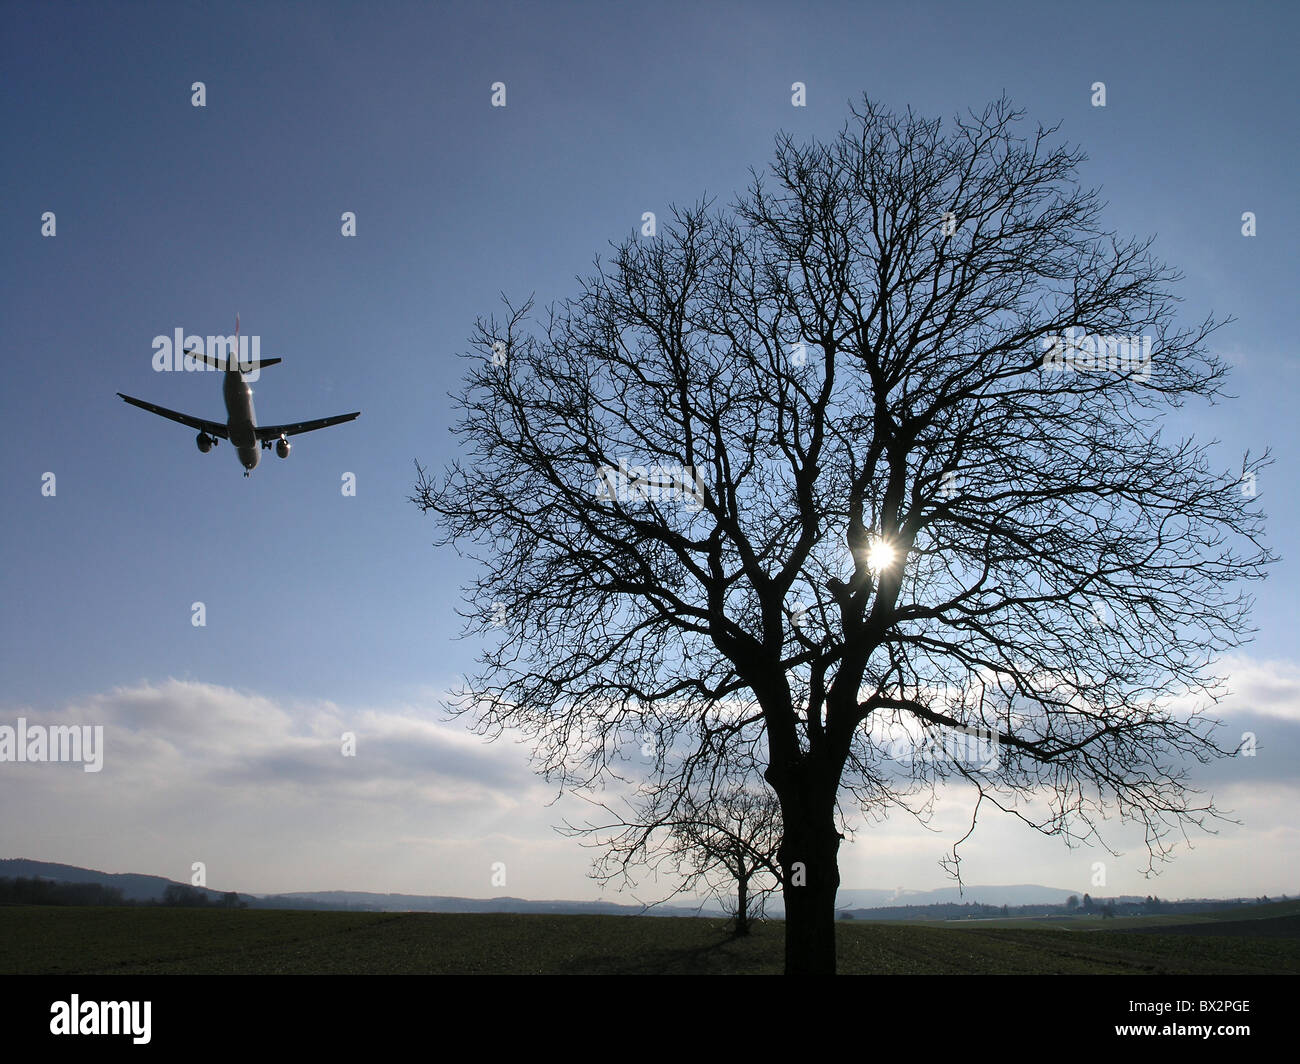 Velivolo jet jet atterraggio aereo tree silhouettes sky sun volo rumore Il rumore dall'aeroporto di Zurigo Svizzera E Foto Stock